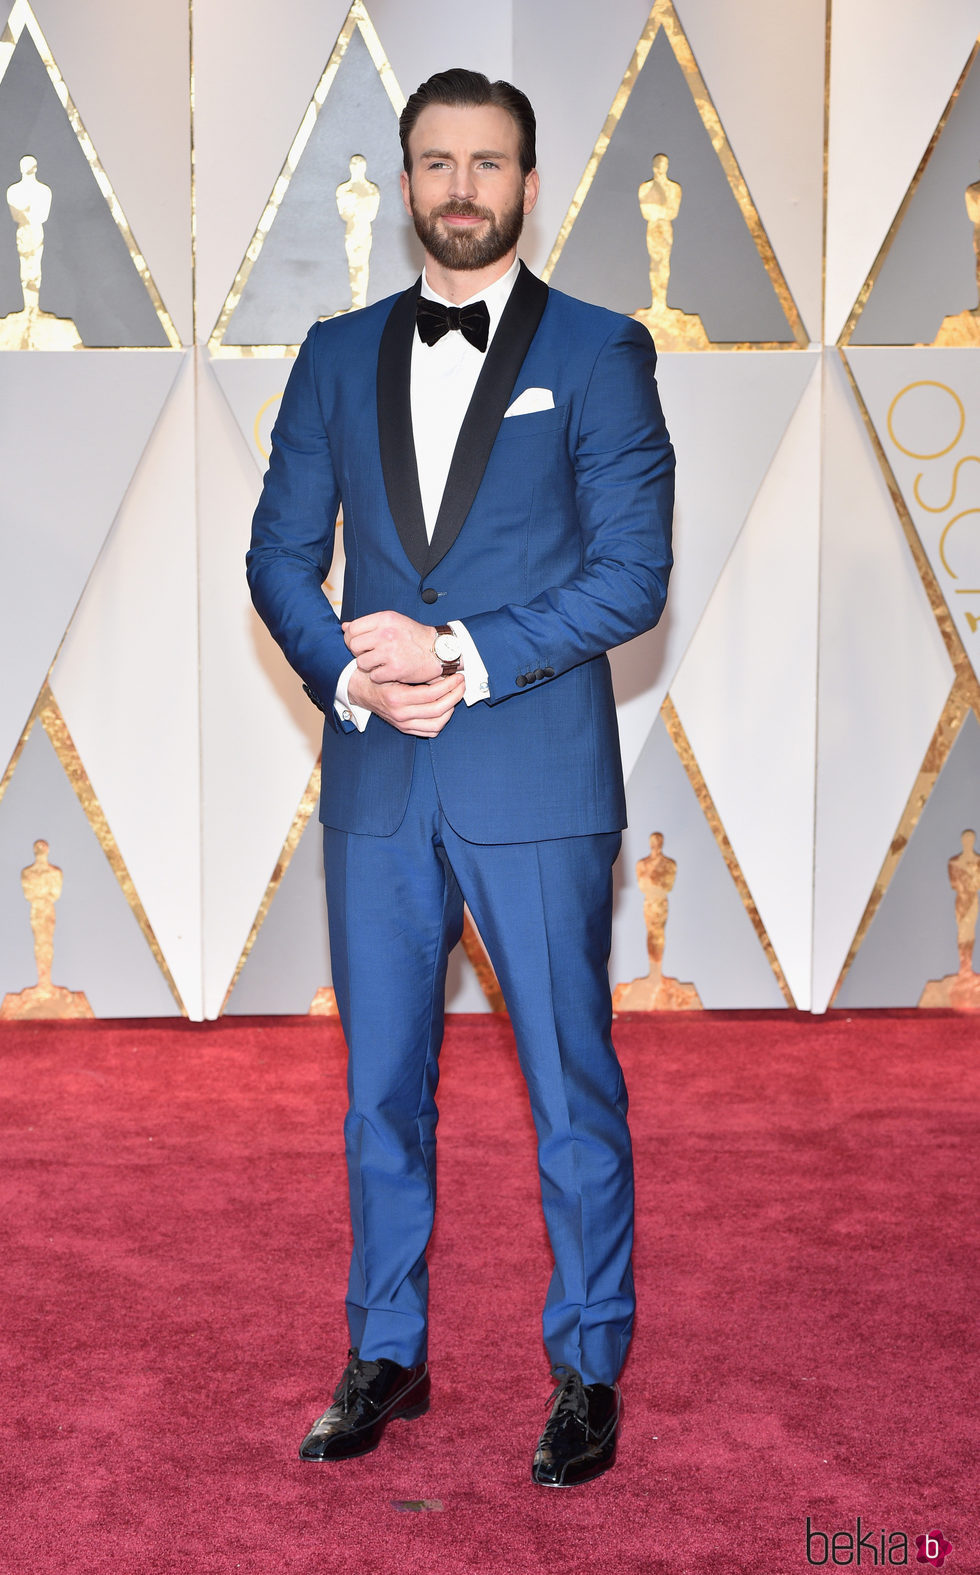 Chris Evans en la alfombra roja de los Premios Oscar 2017